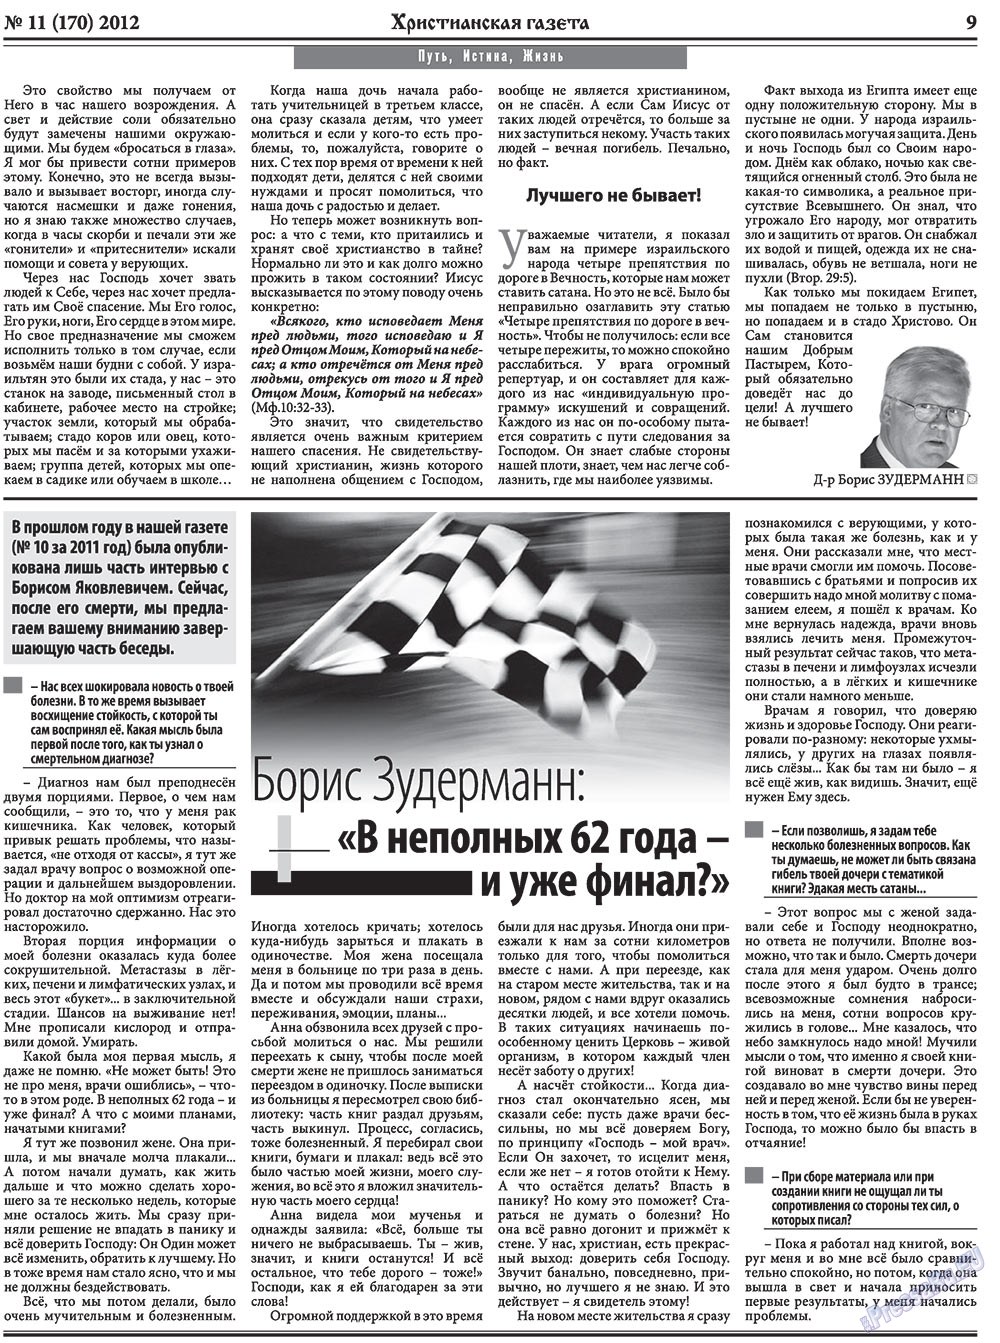 Христианская газета, газета. 2012 №11 стр.9